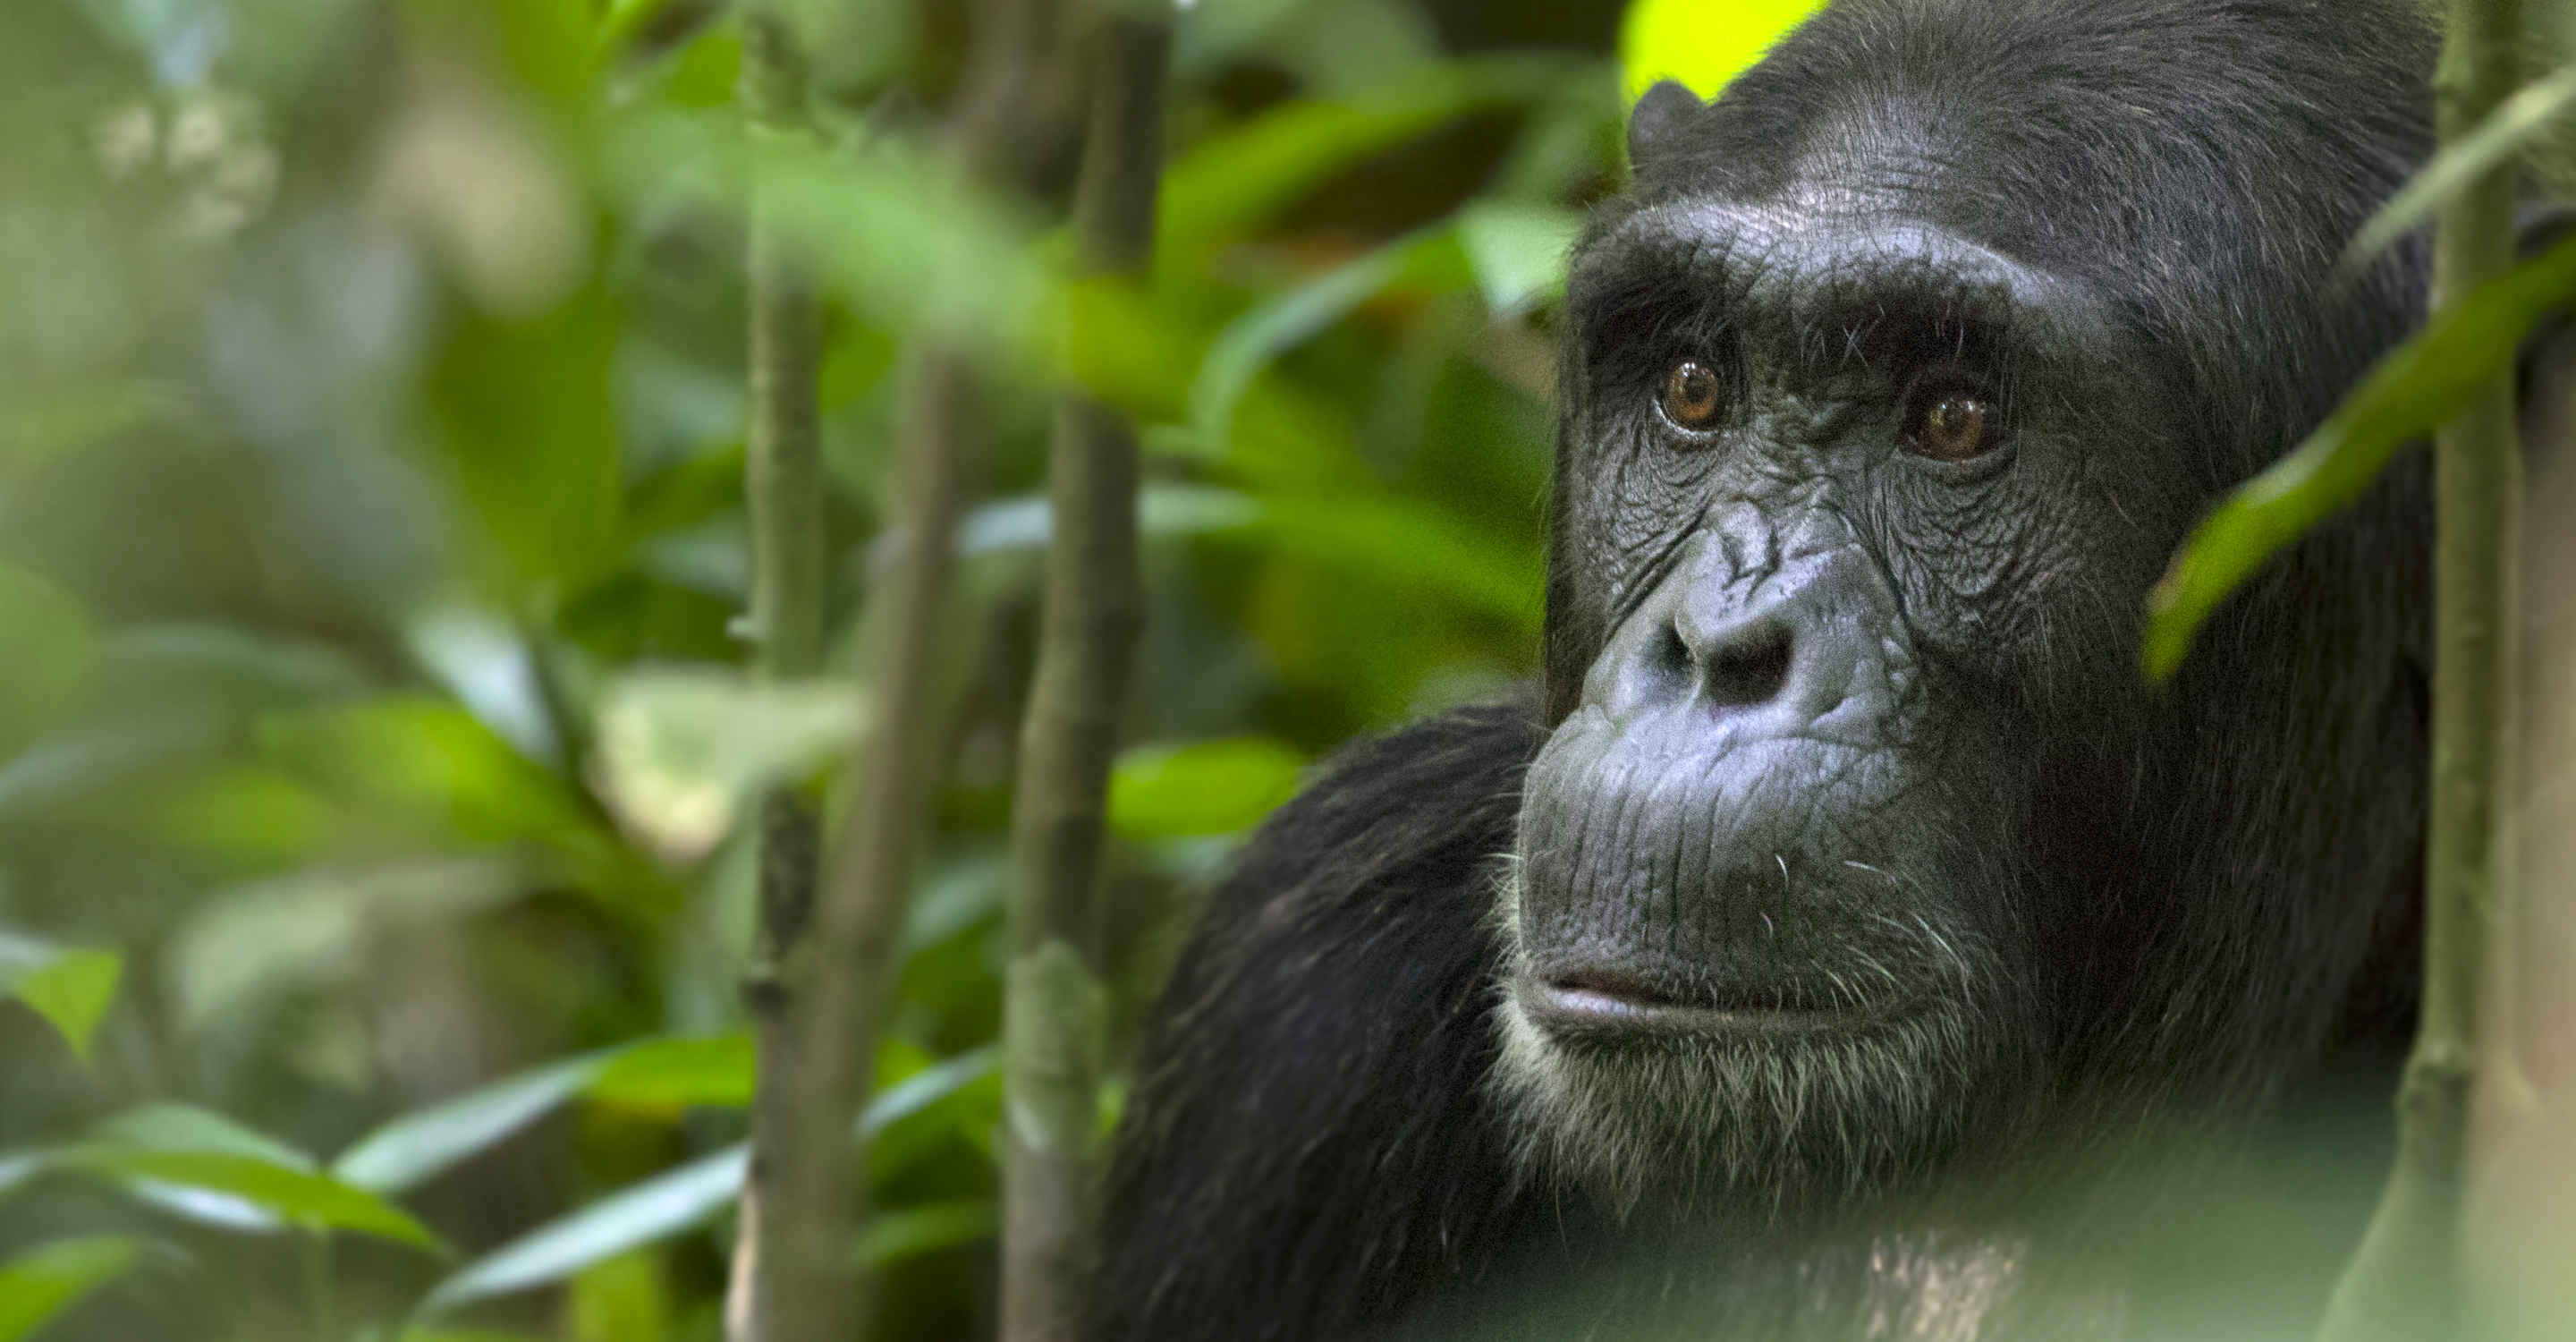 Close-up of a chimpanzee in Uganda